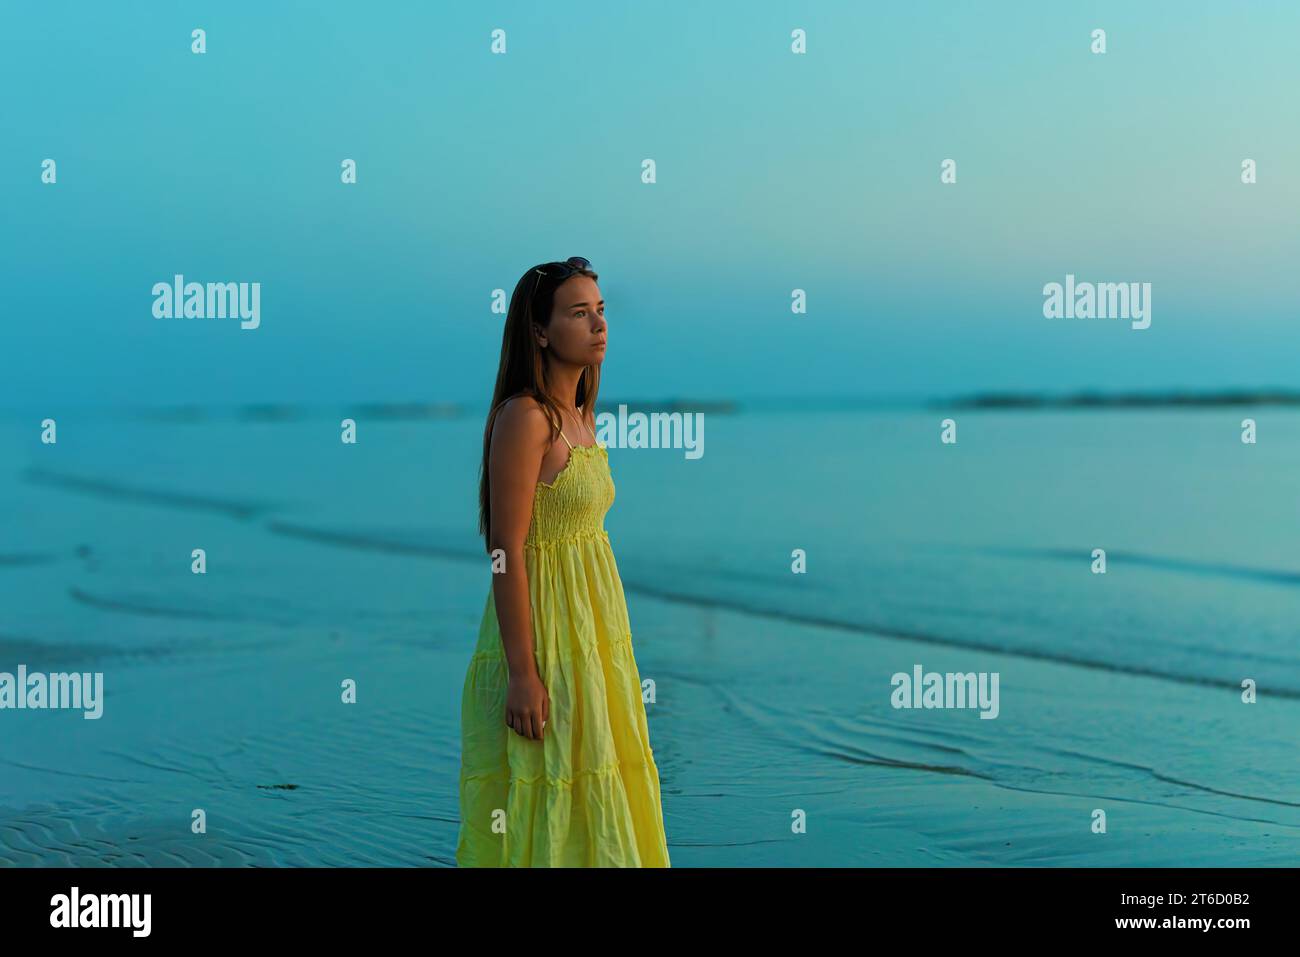 Una giovane donna con un vestito giallo, che guarda con ansia l'alba, cammina lungo la spiaggia. Foto Stock